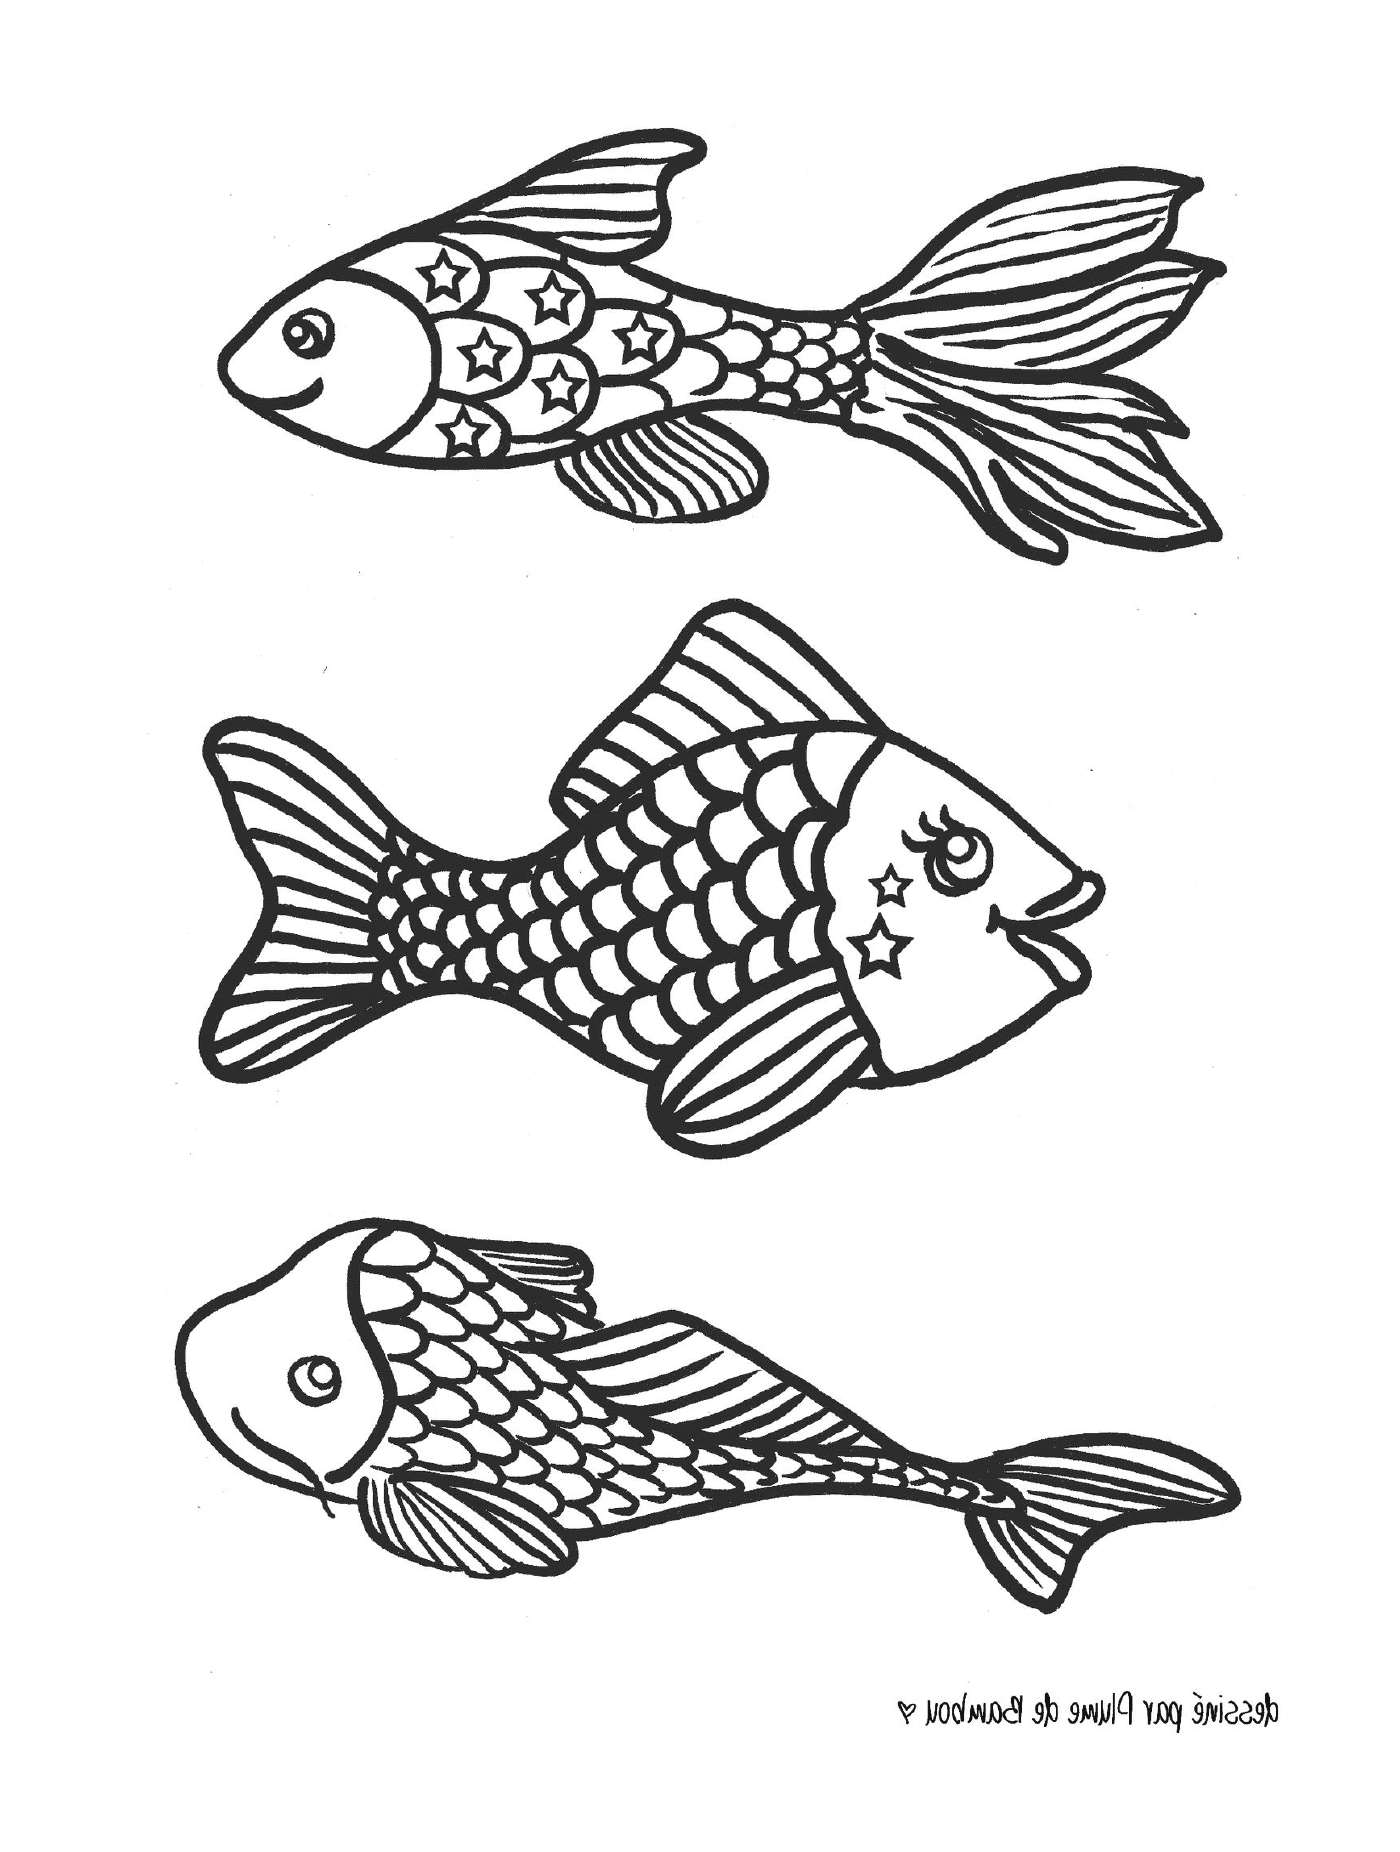  Three black and white fish 